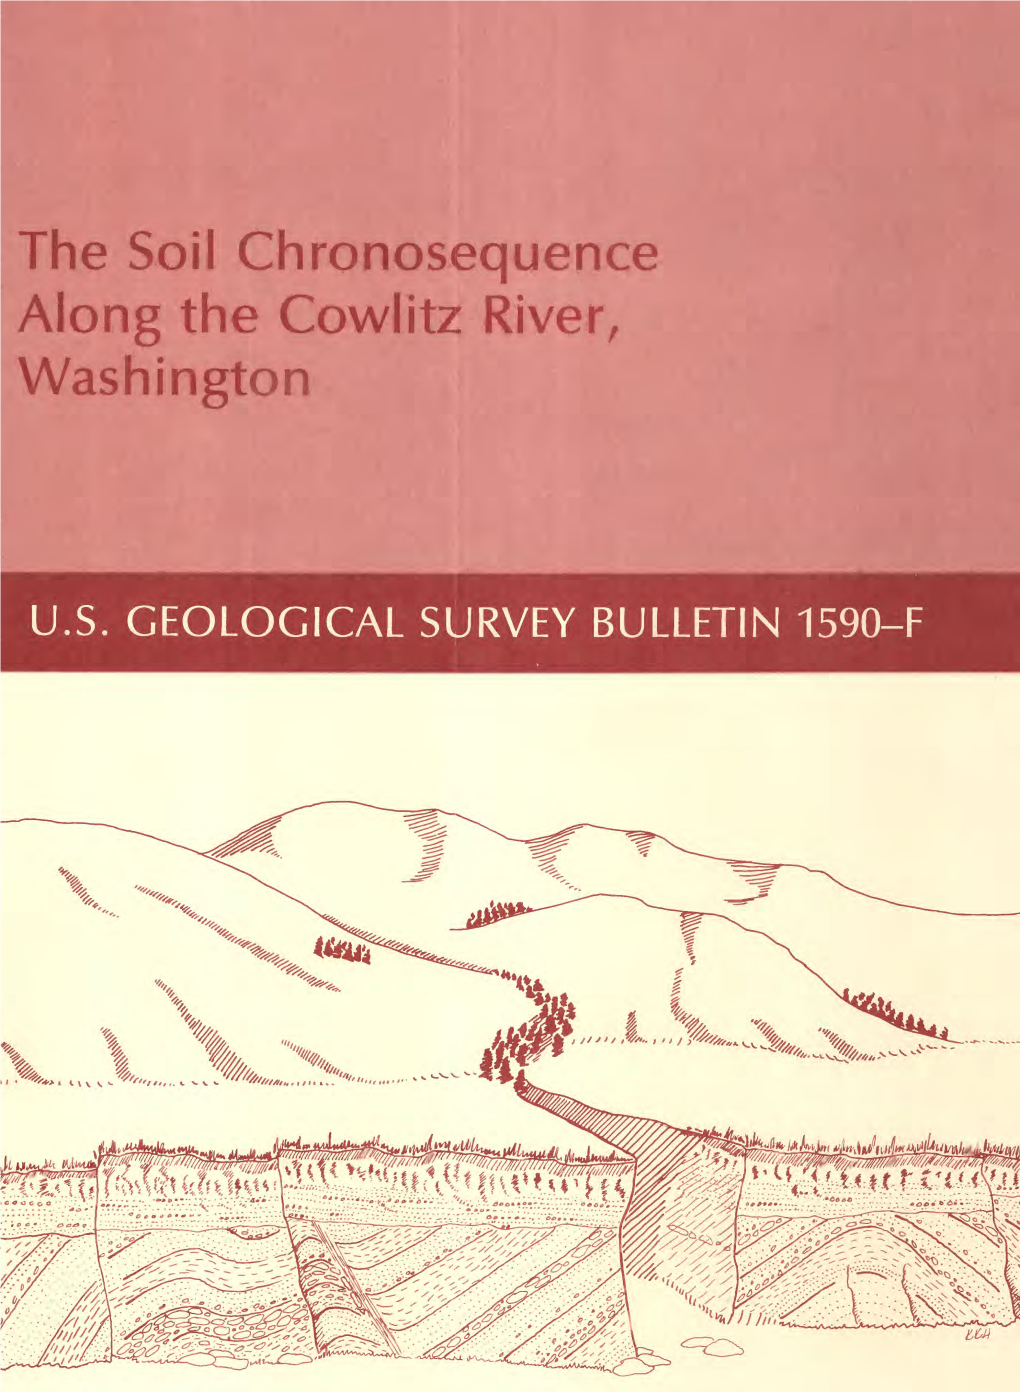 The Soil Chronosequence Along the Cowlitz River, Washington